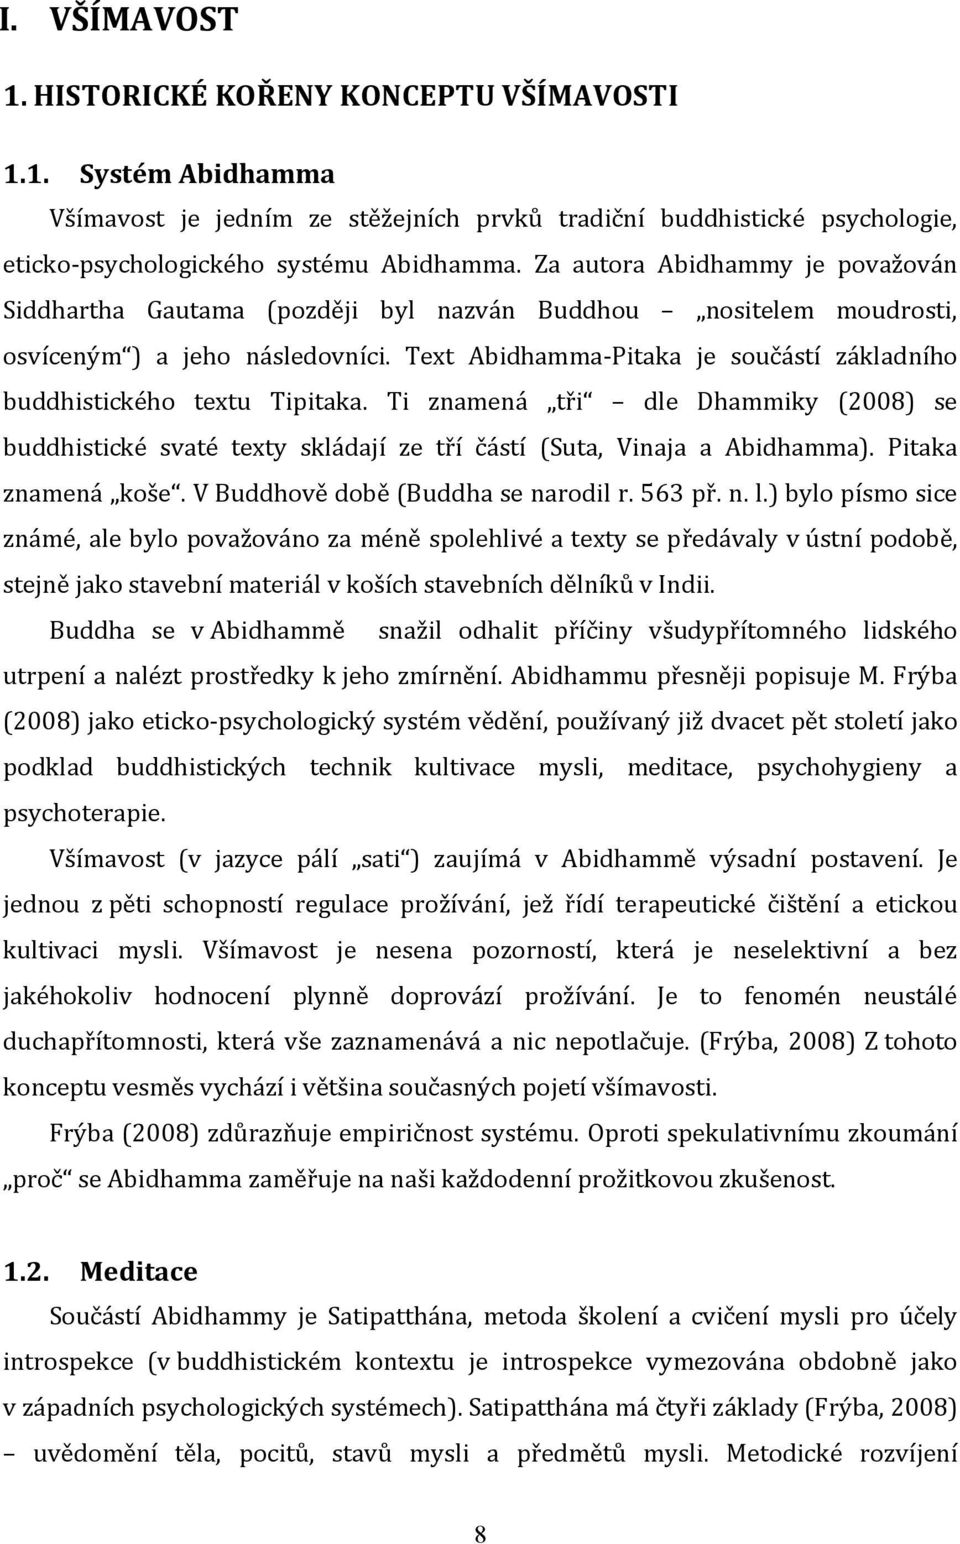 Text Abidhamma-Pitaka je součástí základního buddhistického textu Tipitaka. Ti znamená tři dle Dhammiky (2008) se buddhistické svaté texty skládají ze tří částí (Suta, Vinaja a Abidhamma).